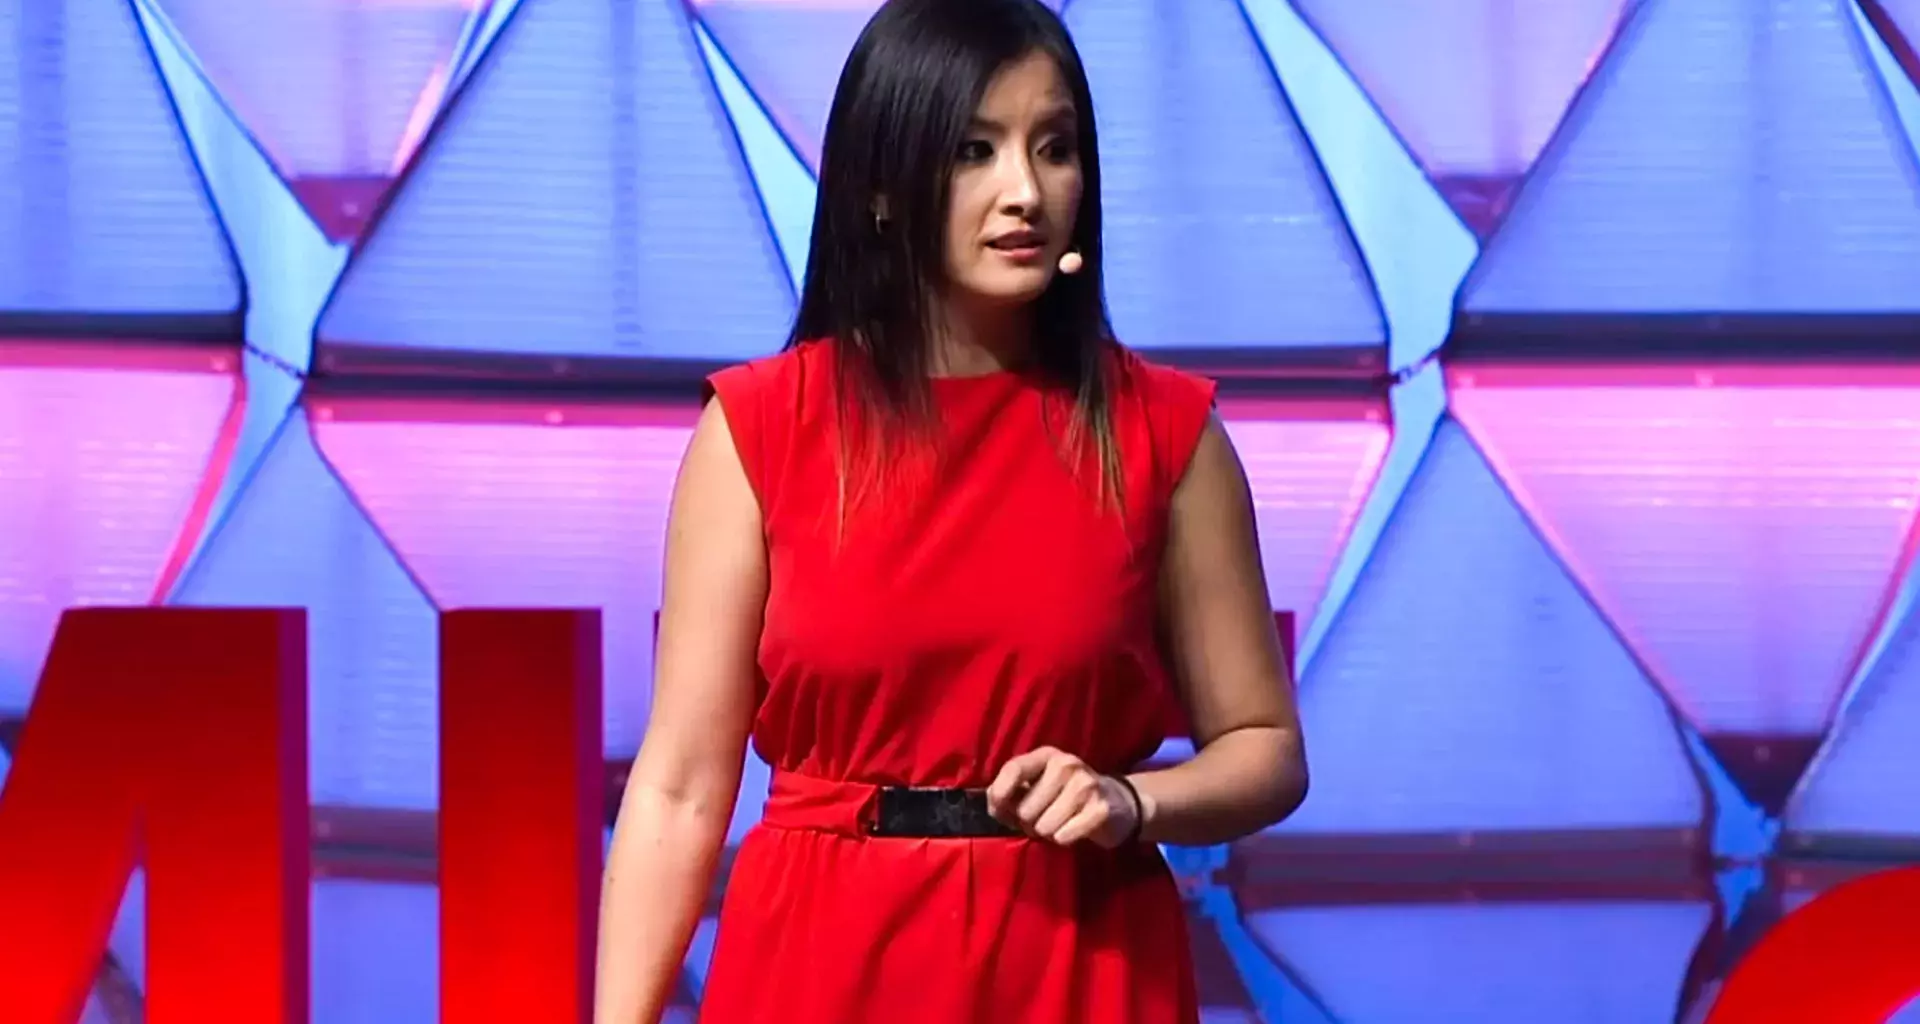 Alicia Chong desarrolló un sensor cardiaco para mujeres y fue reconocida por la iniciativa TED